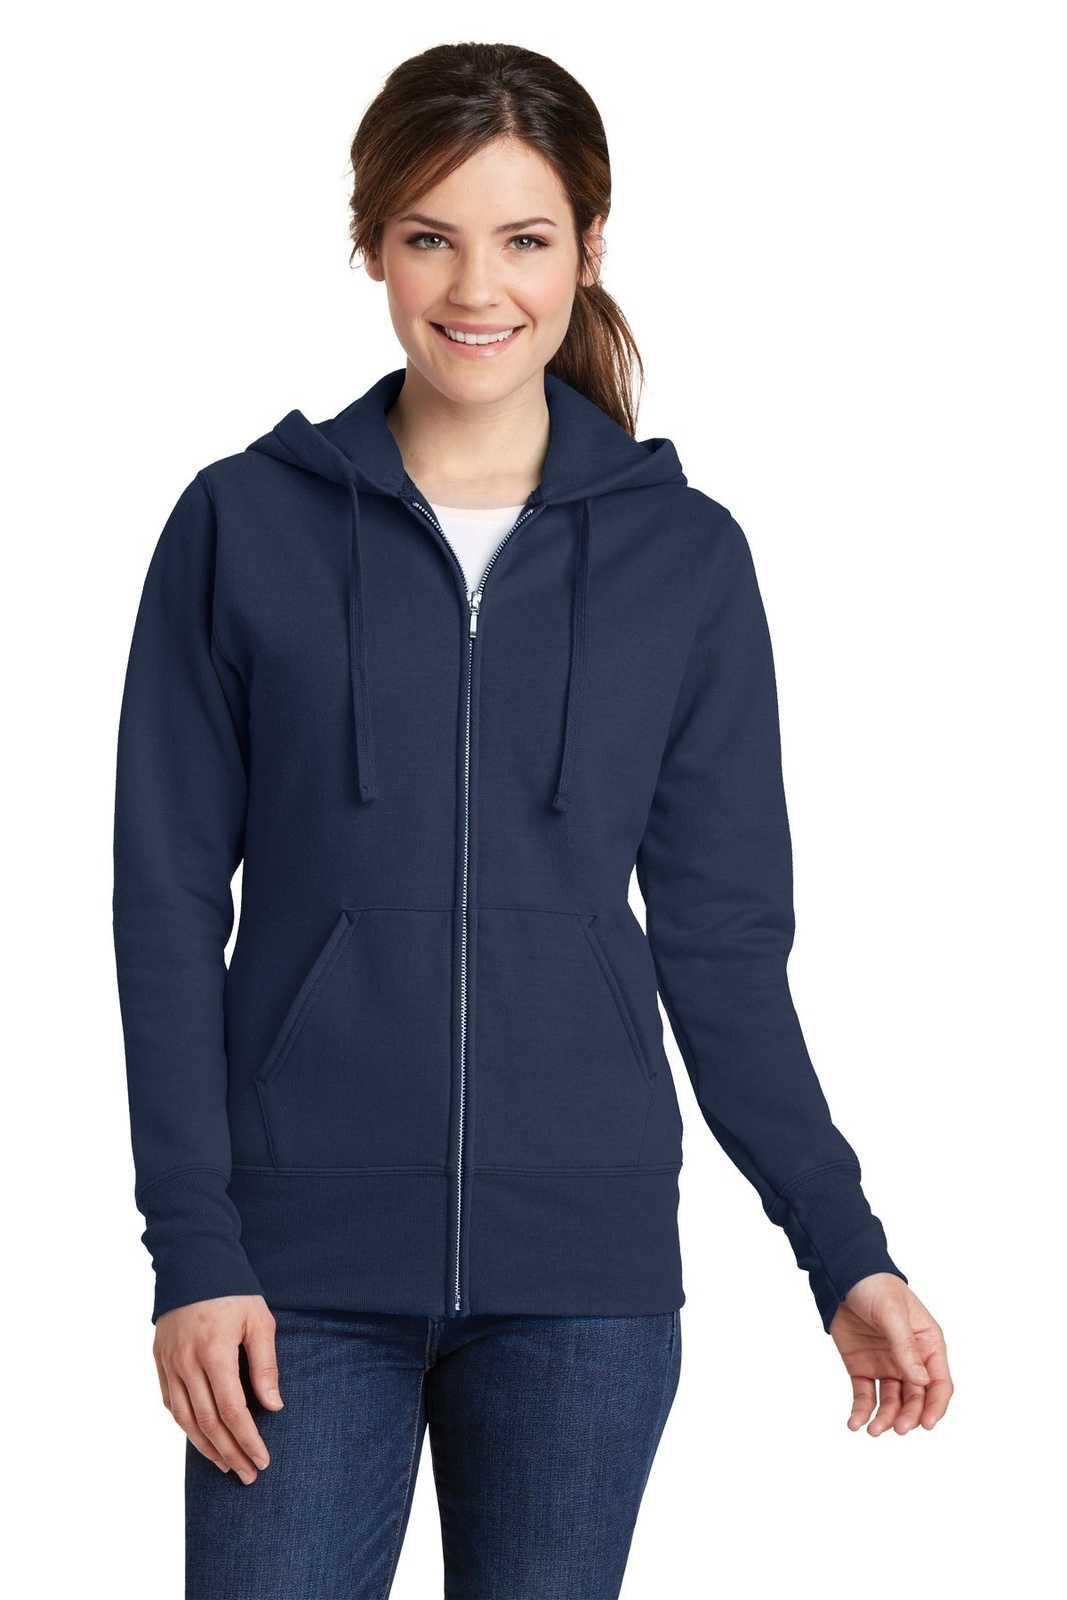 Port & Company LPC78ZH Ladies Core Fleece Full-Zip Hooded Sweatshirt - Navy - HIT a Double - 1